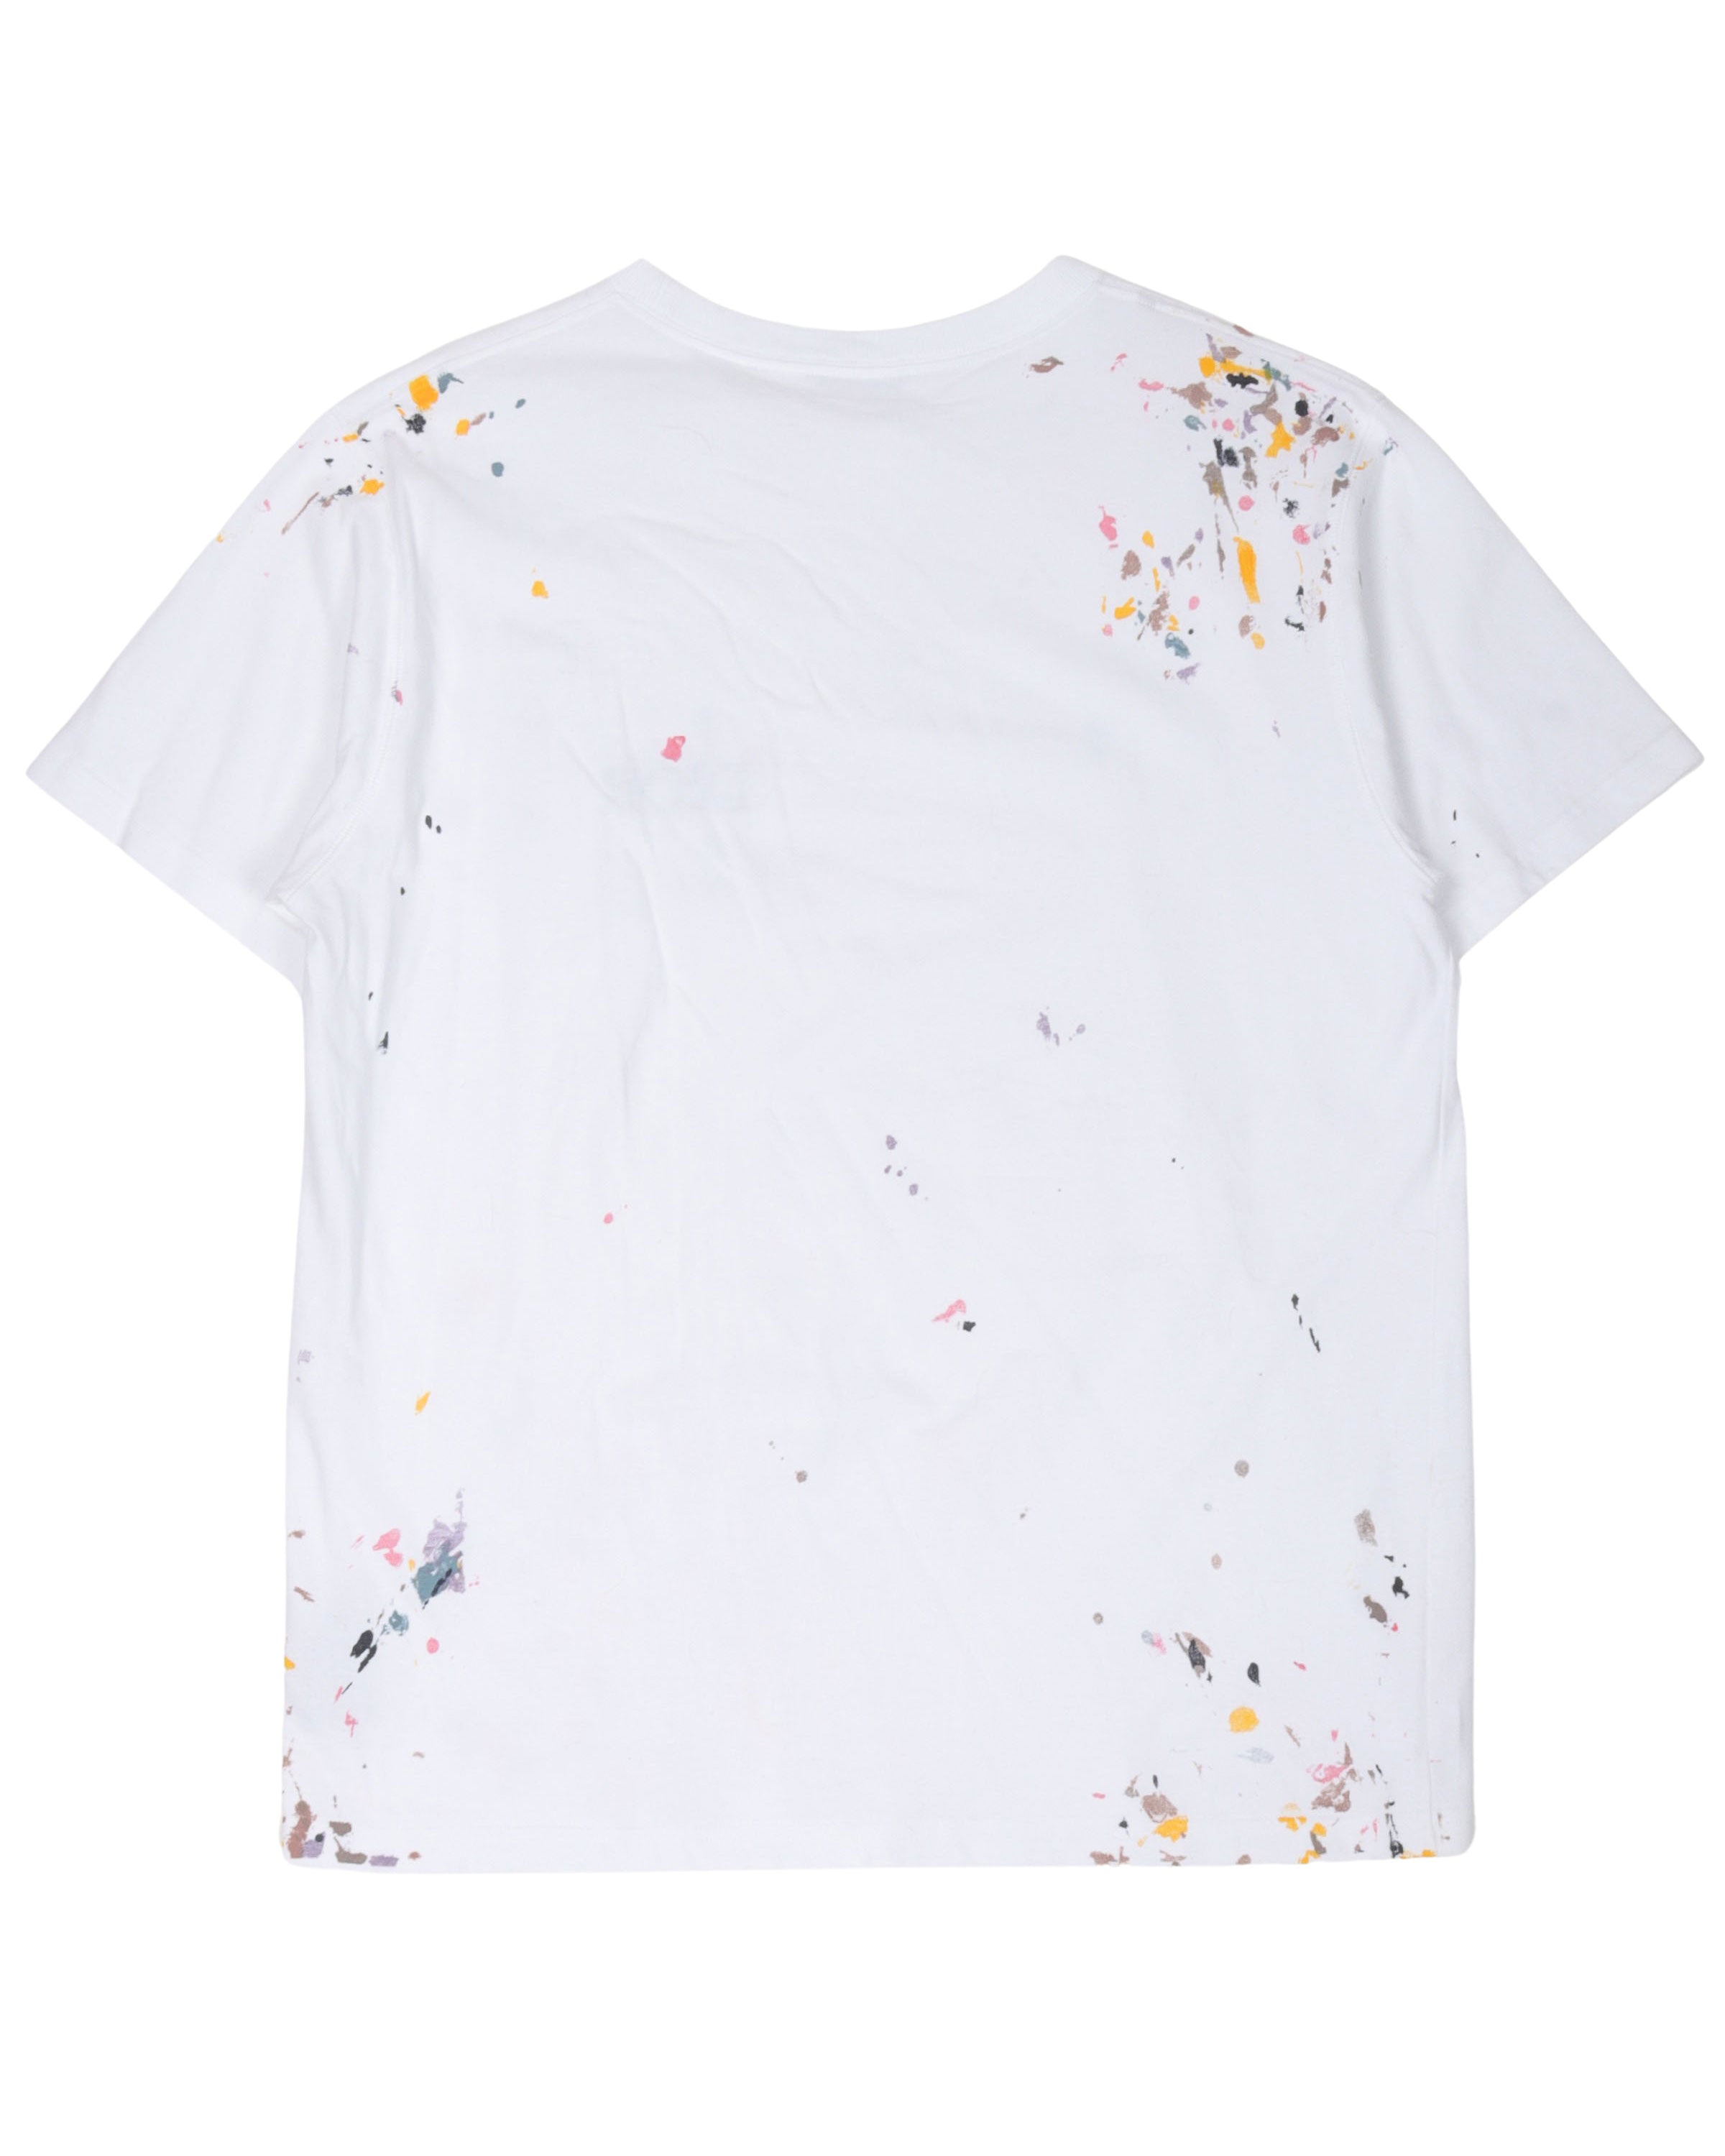 Splatter Paint T-Shirt